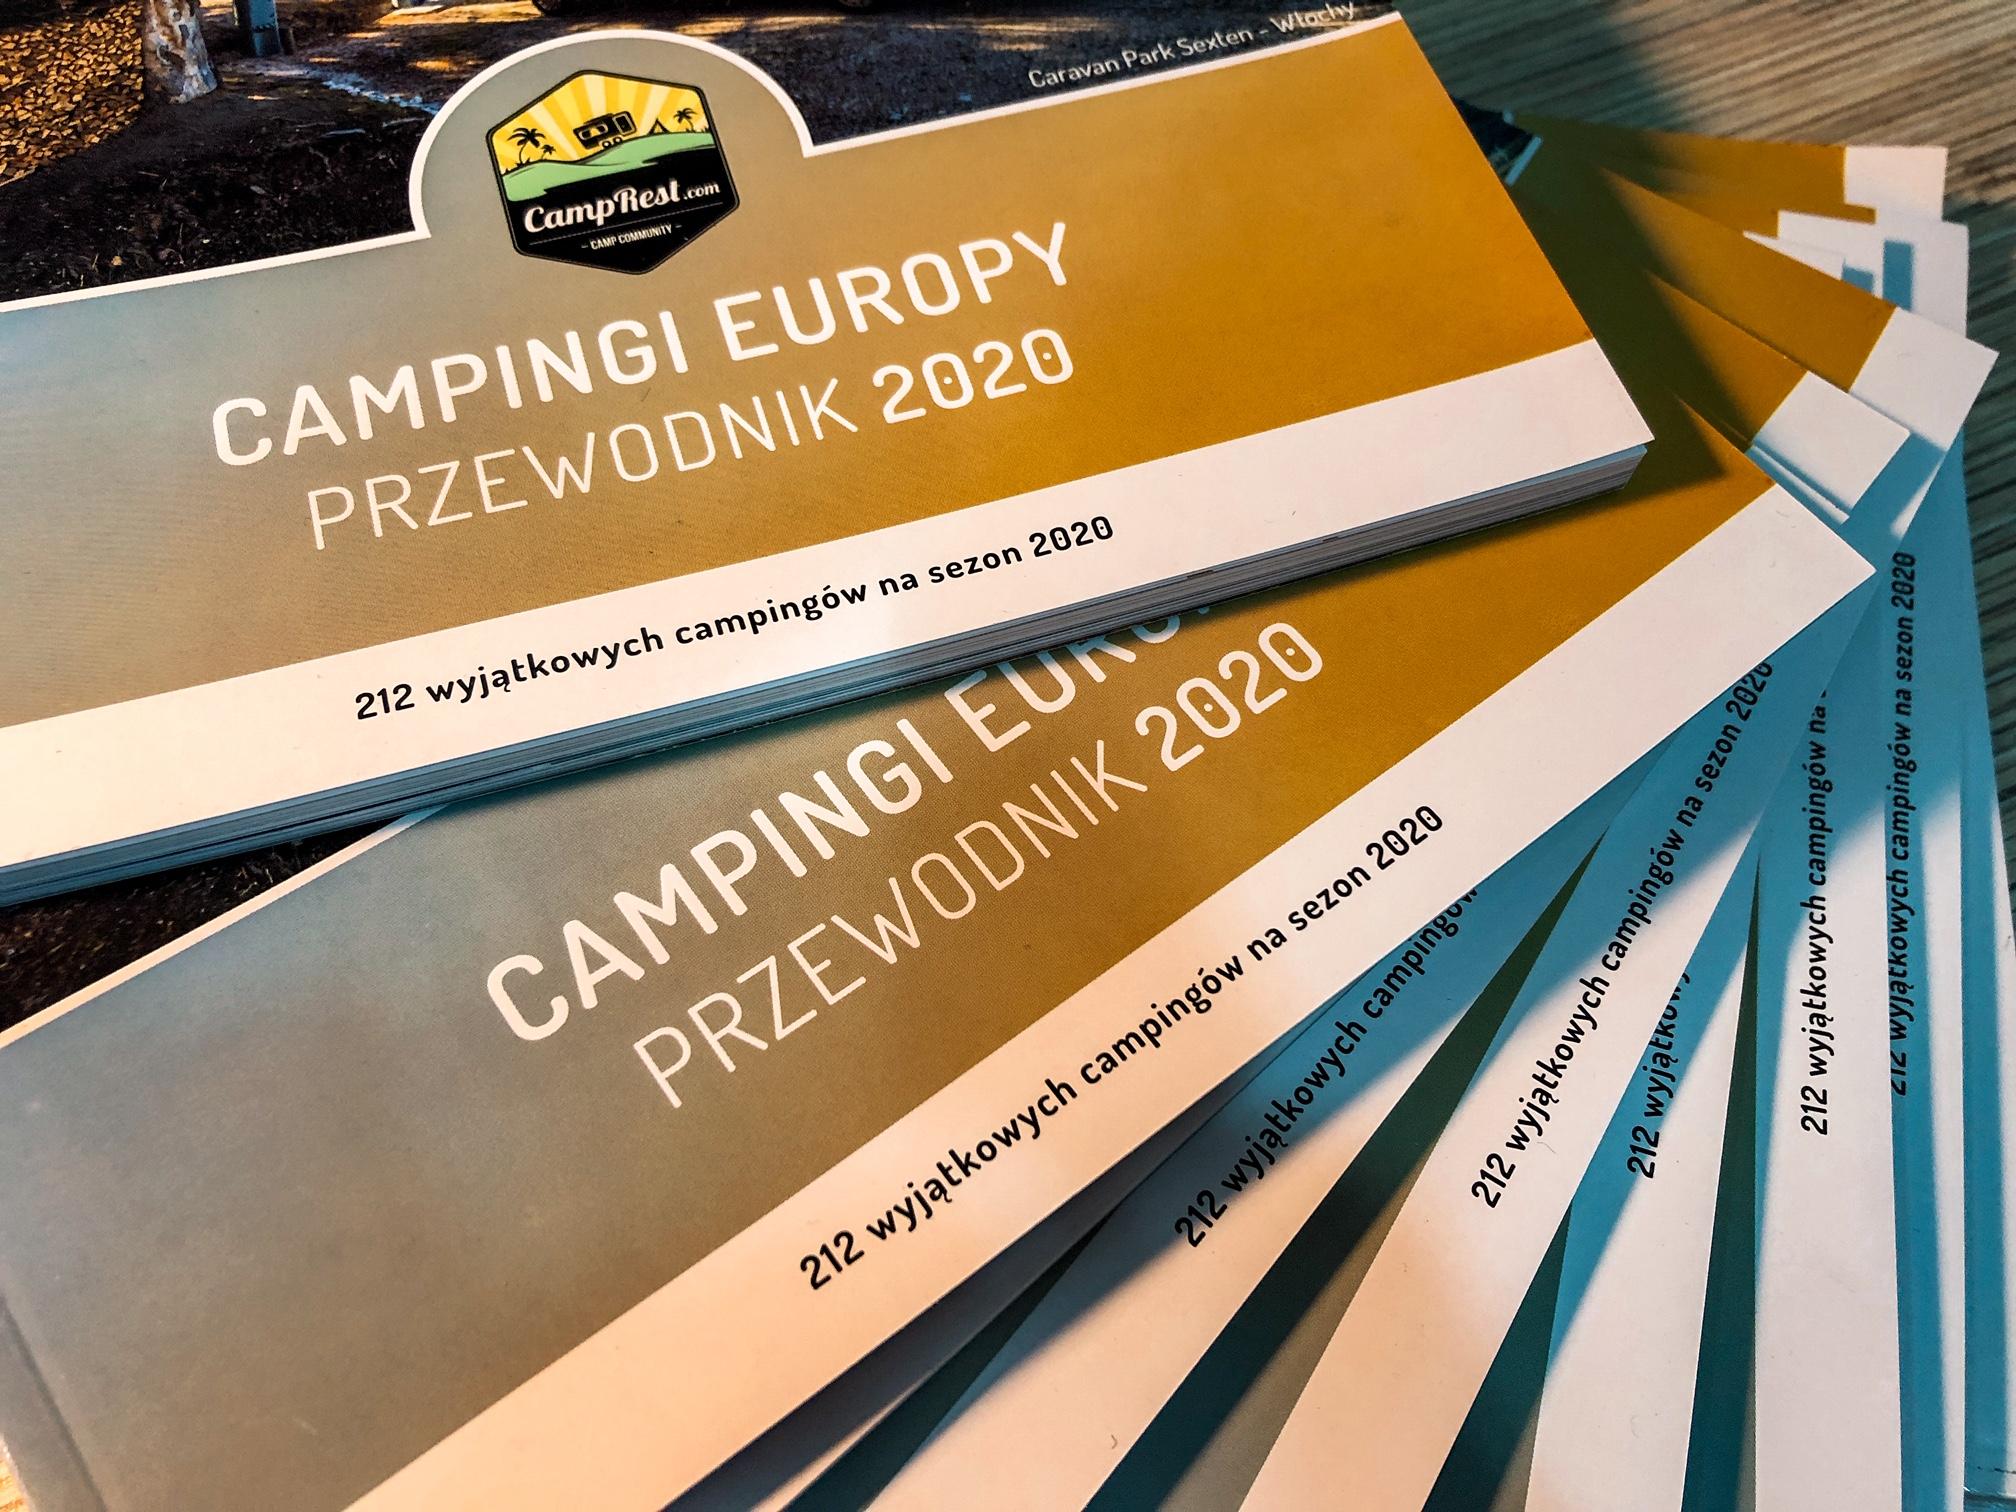 Przewodnik Campingi Europy 2020 - jak zdobyć? – zdjęcie 3